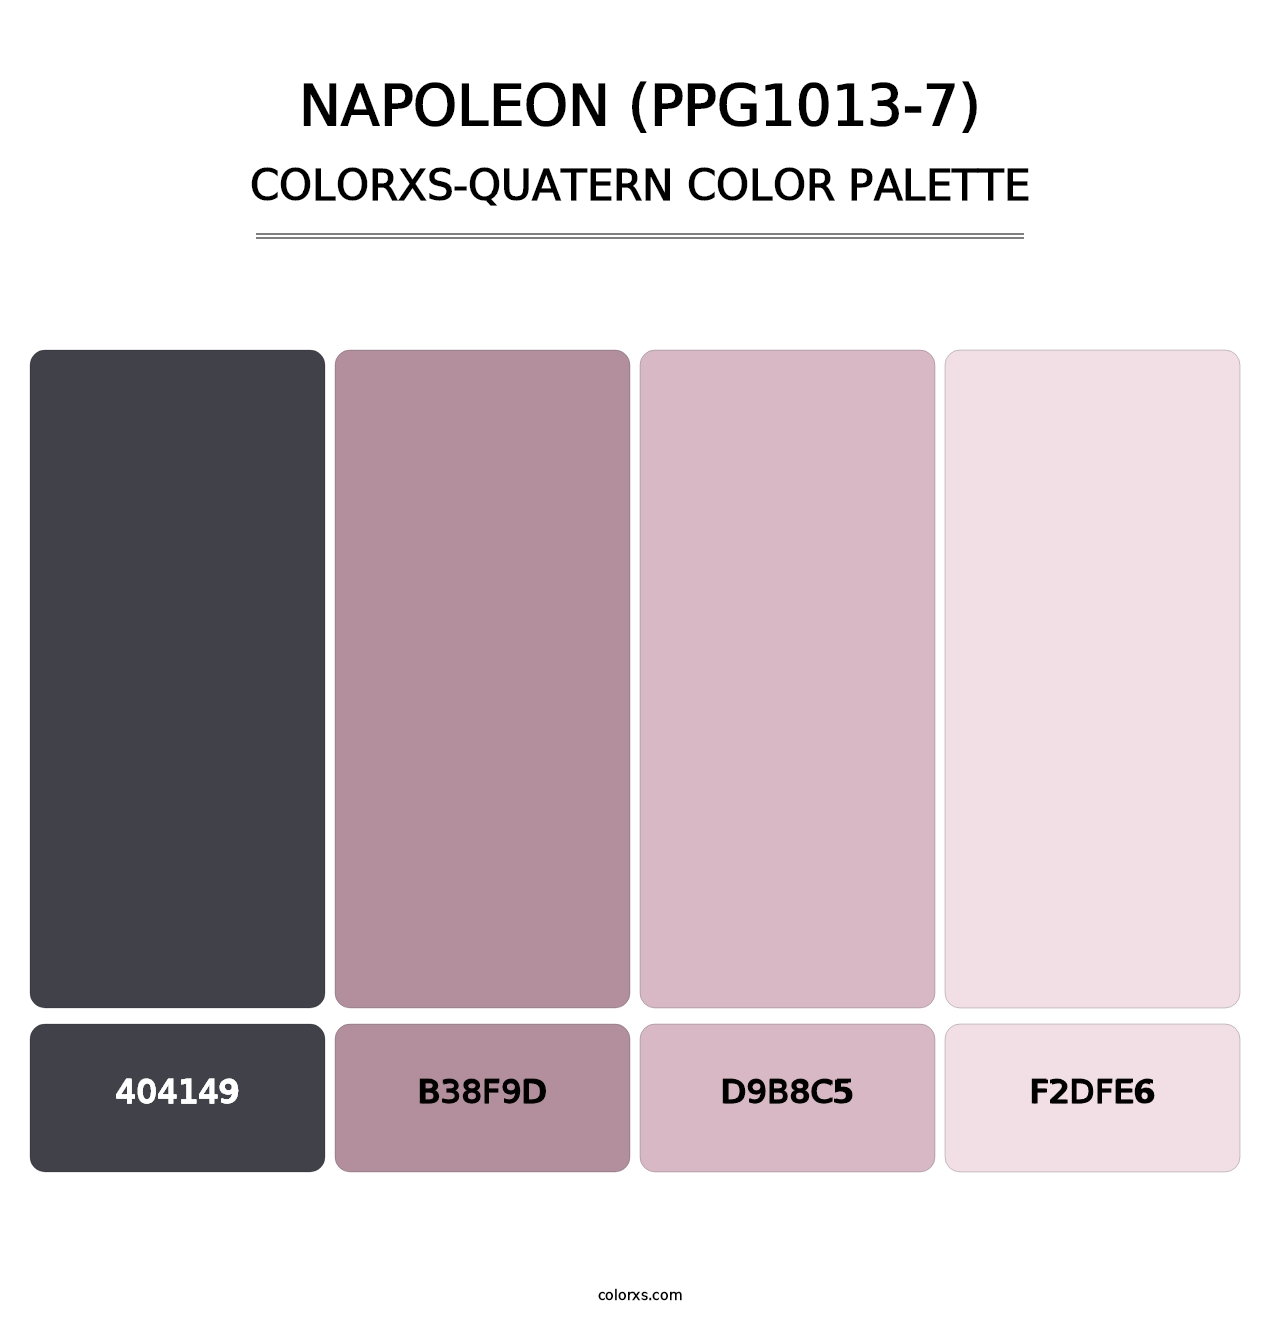 Napoleon (PPG1013-7) - Colorxs Quatern Palette